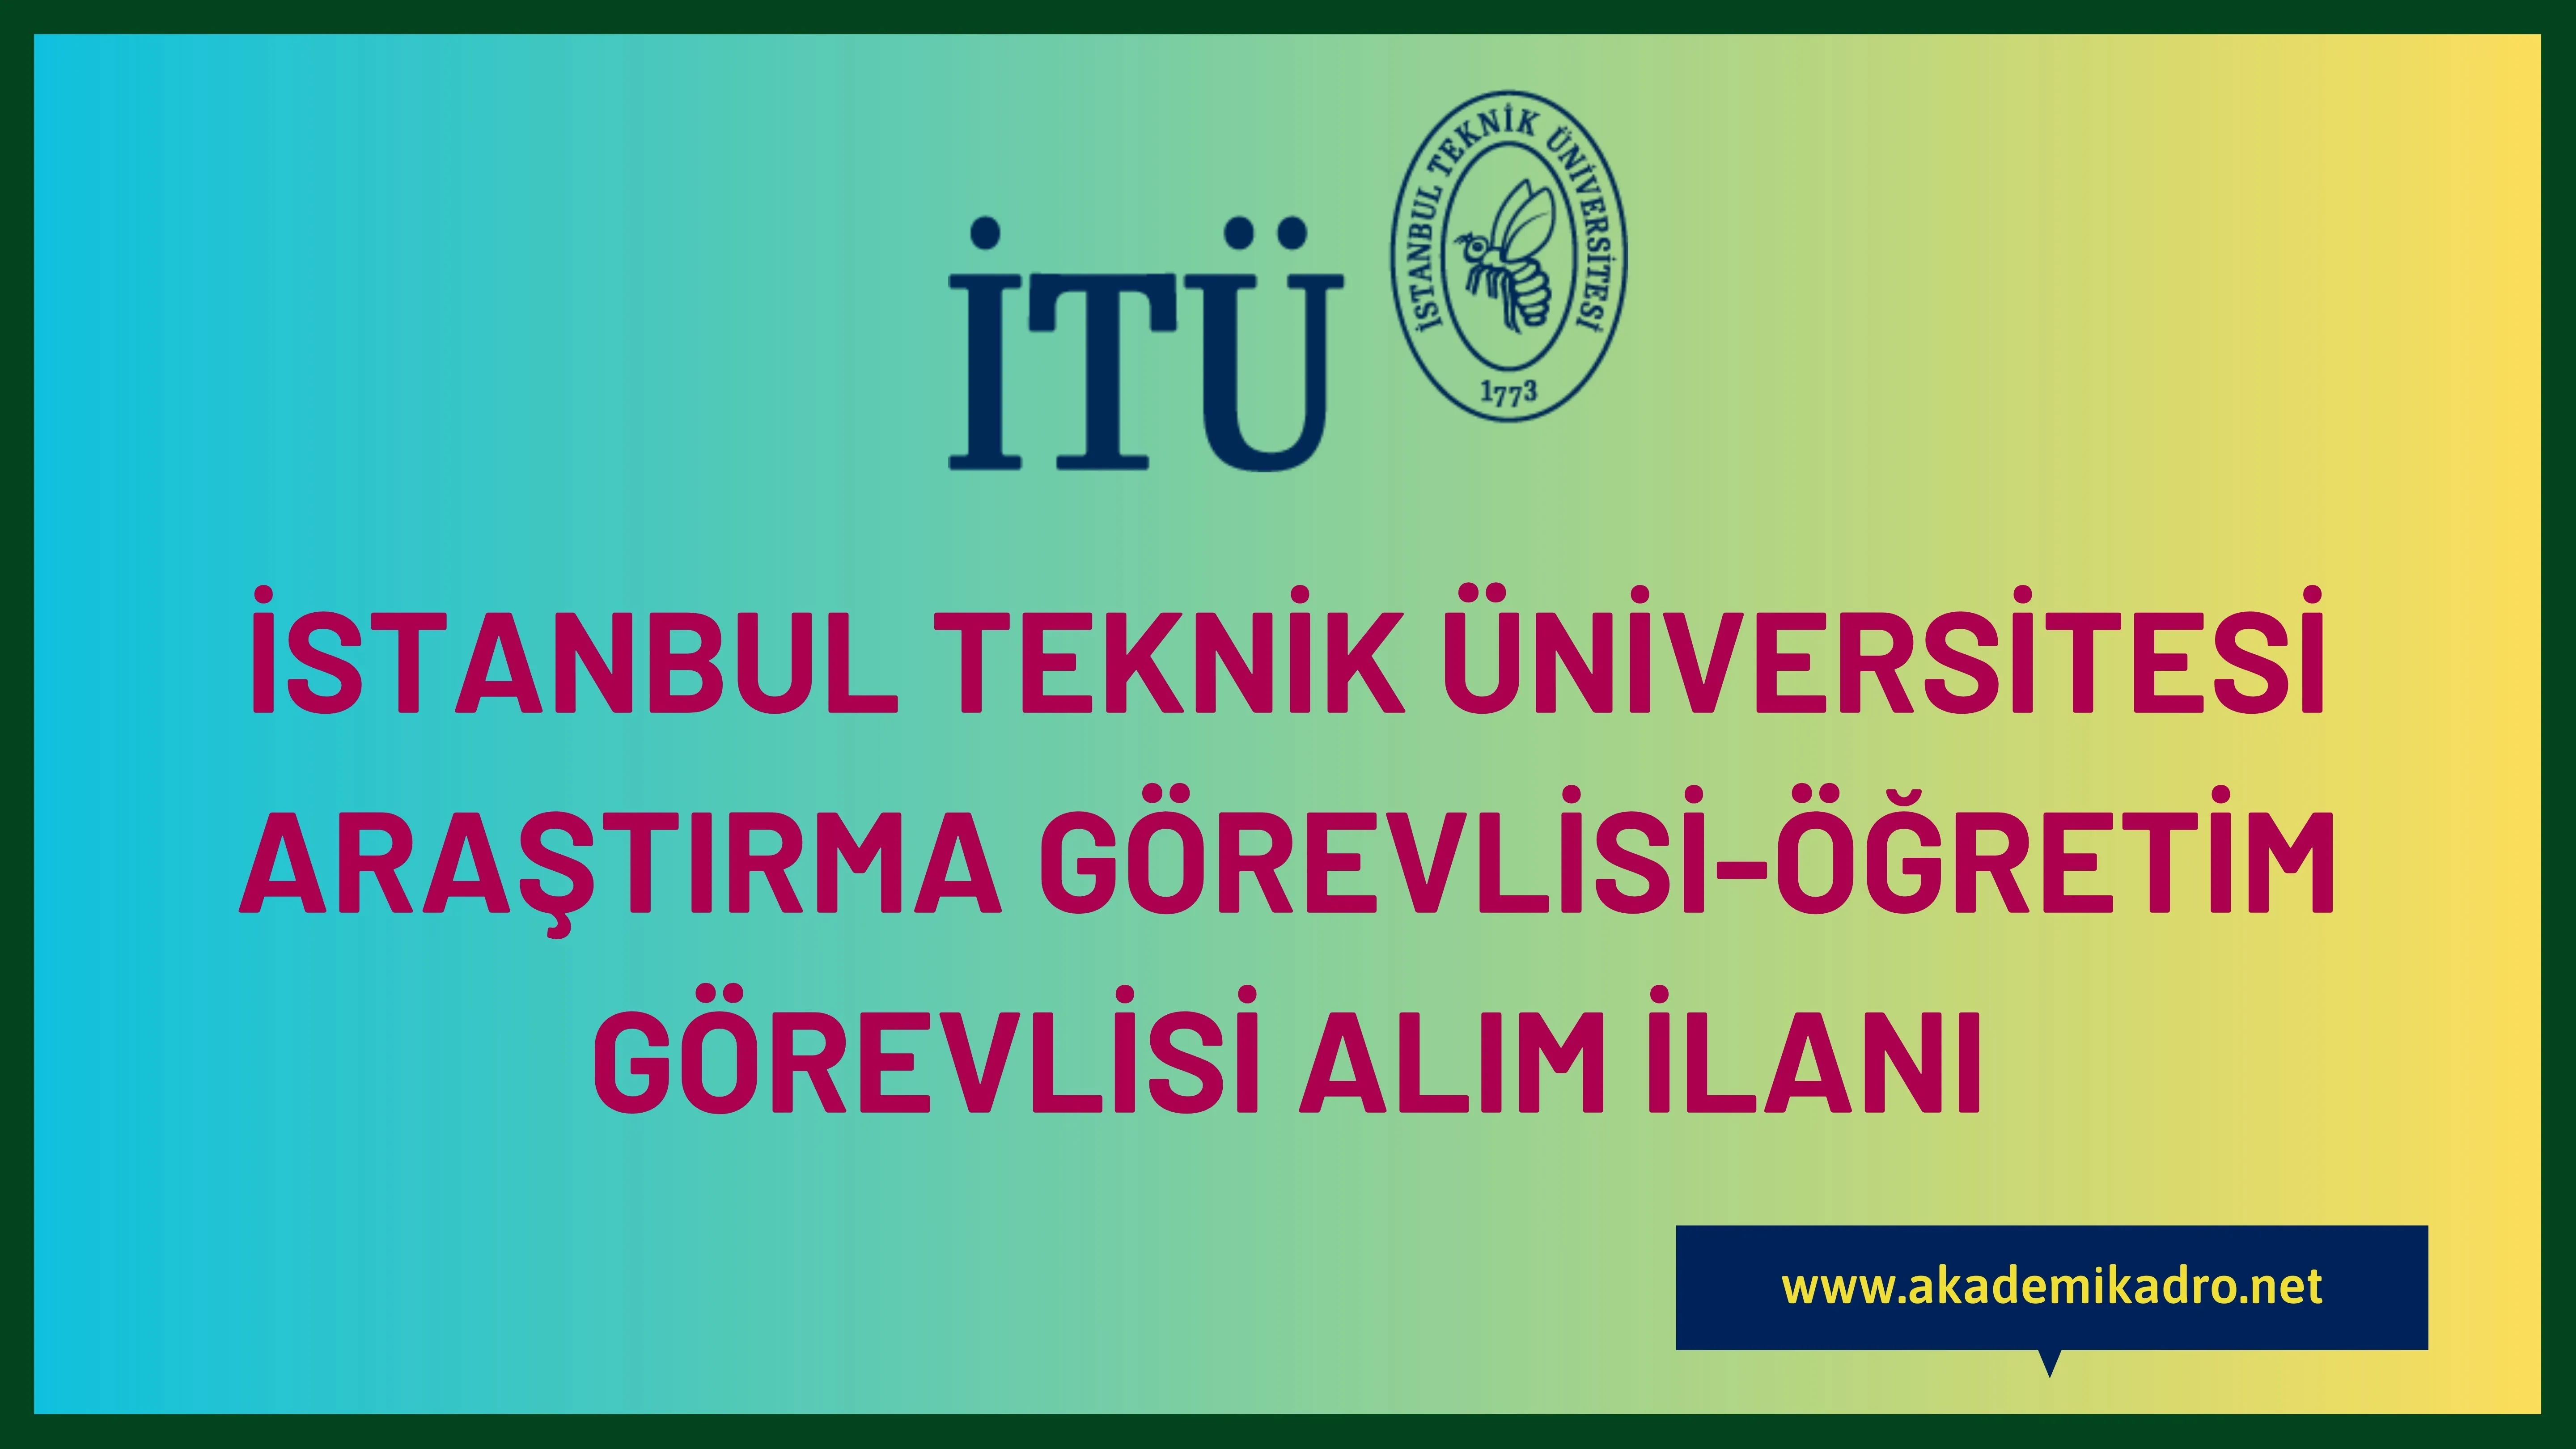 İstanbul Teknik Üniversitesi 53 Araştırma görevlisi ve 18 Öğretim Görevlisi alacak.